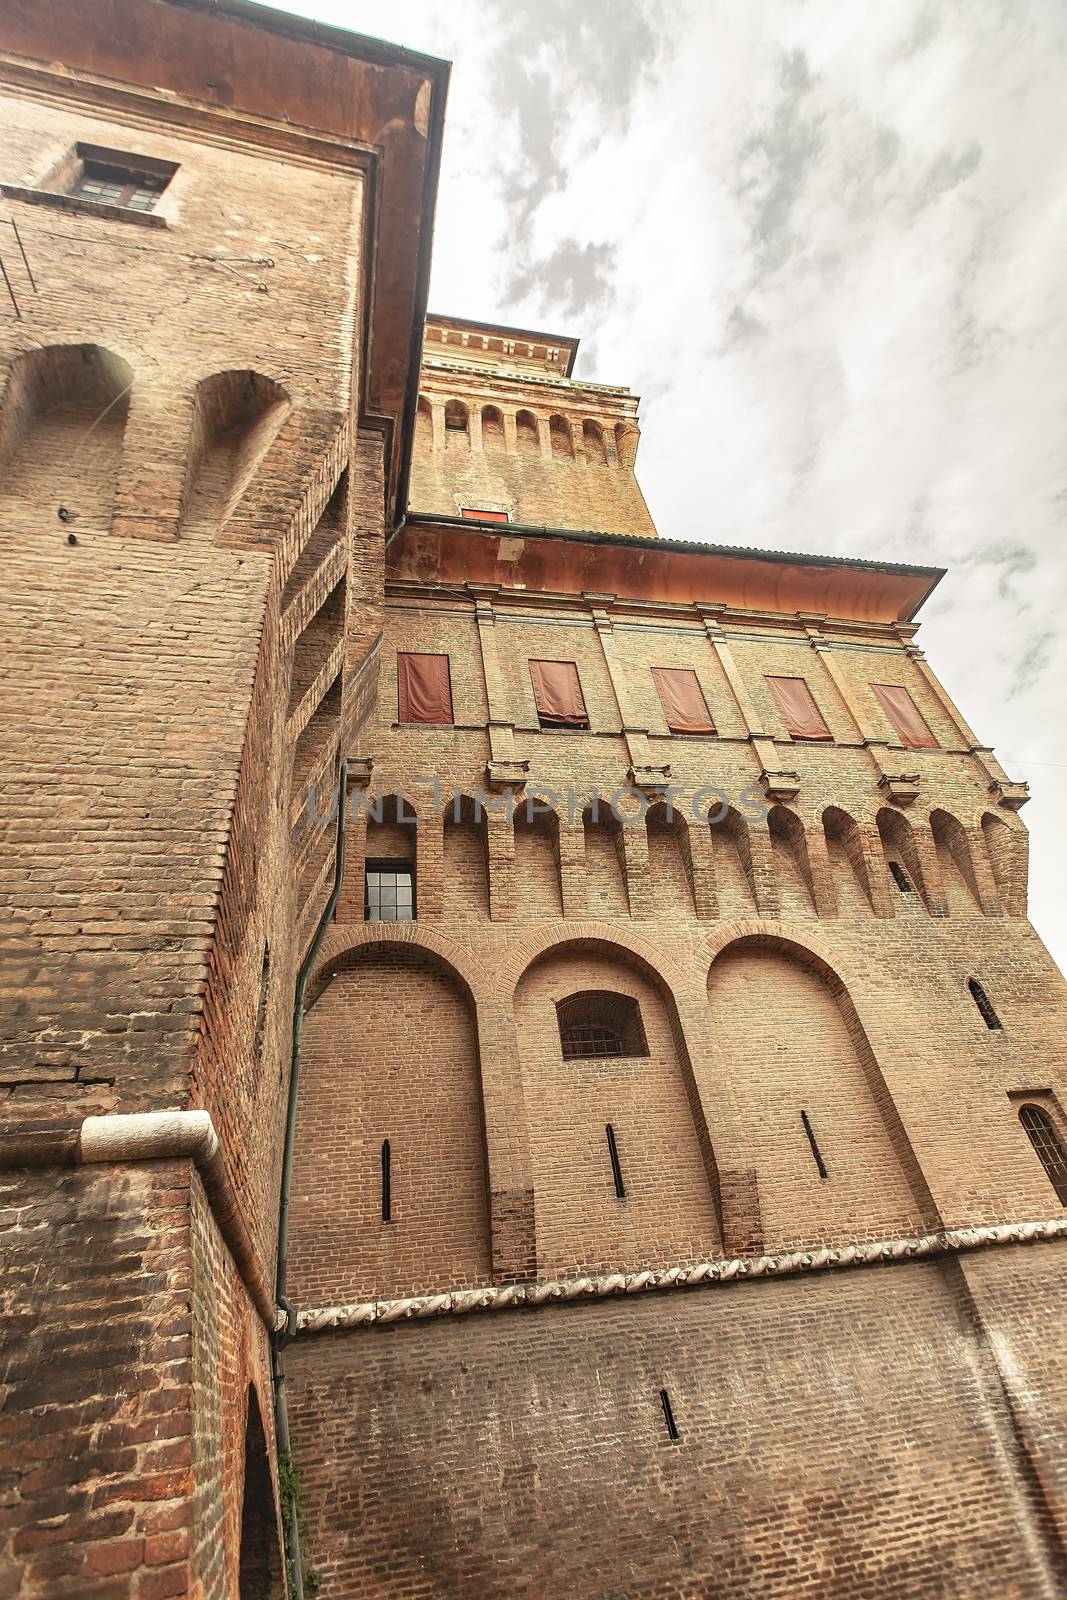 Ferrara's castle in Italy 8 by pippocarlot